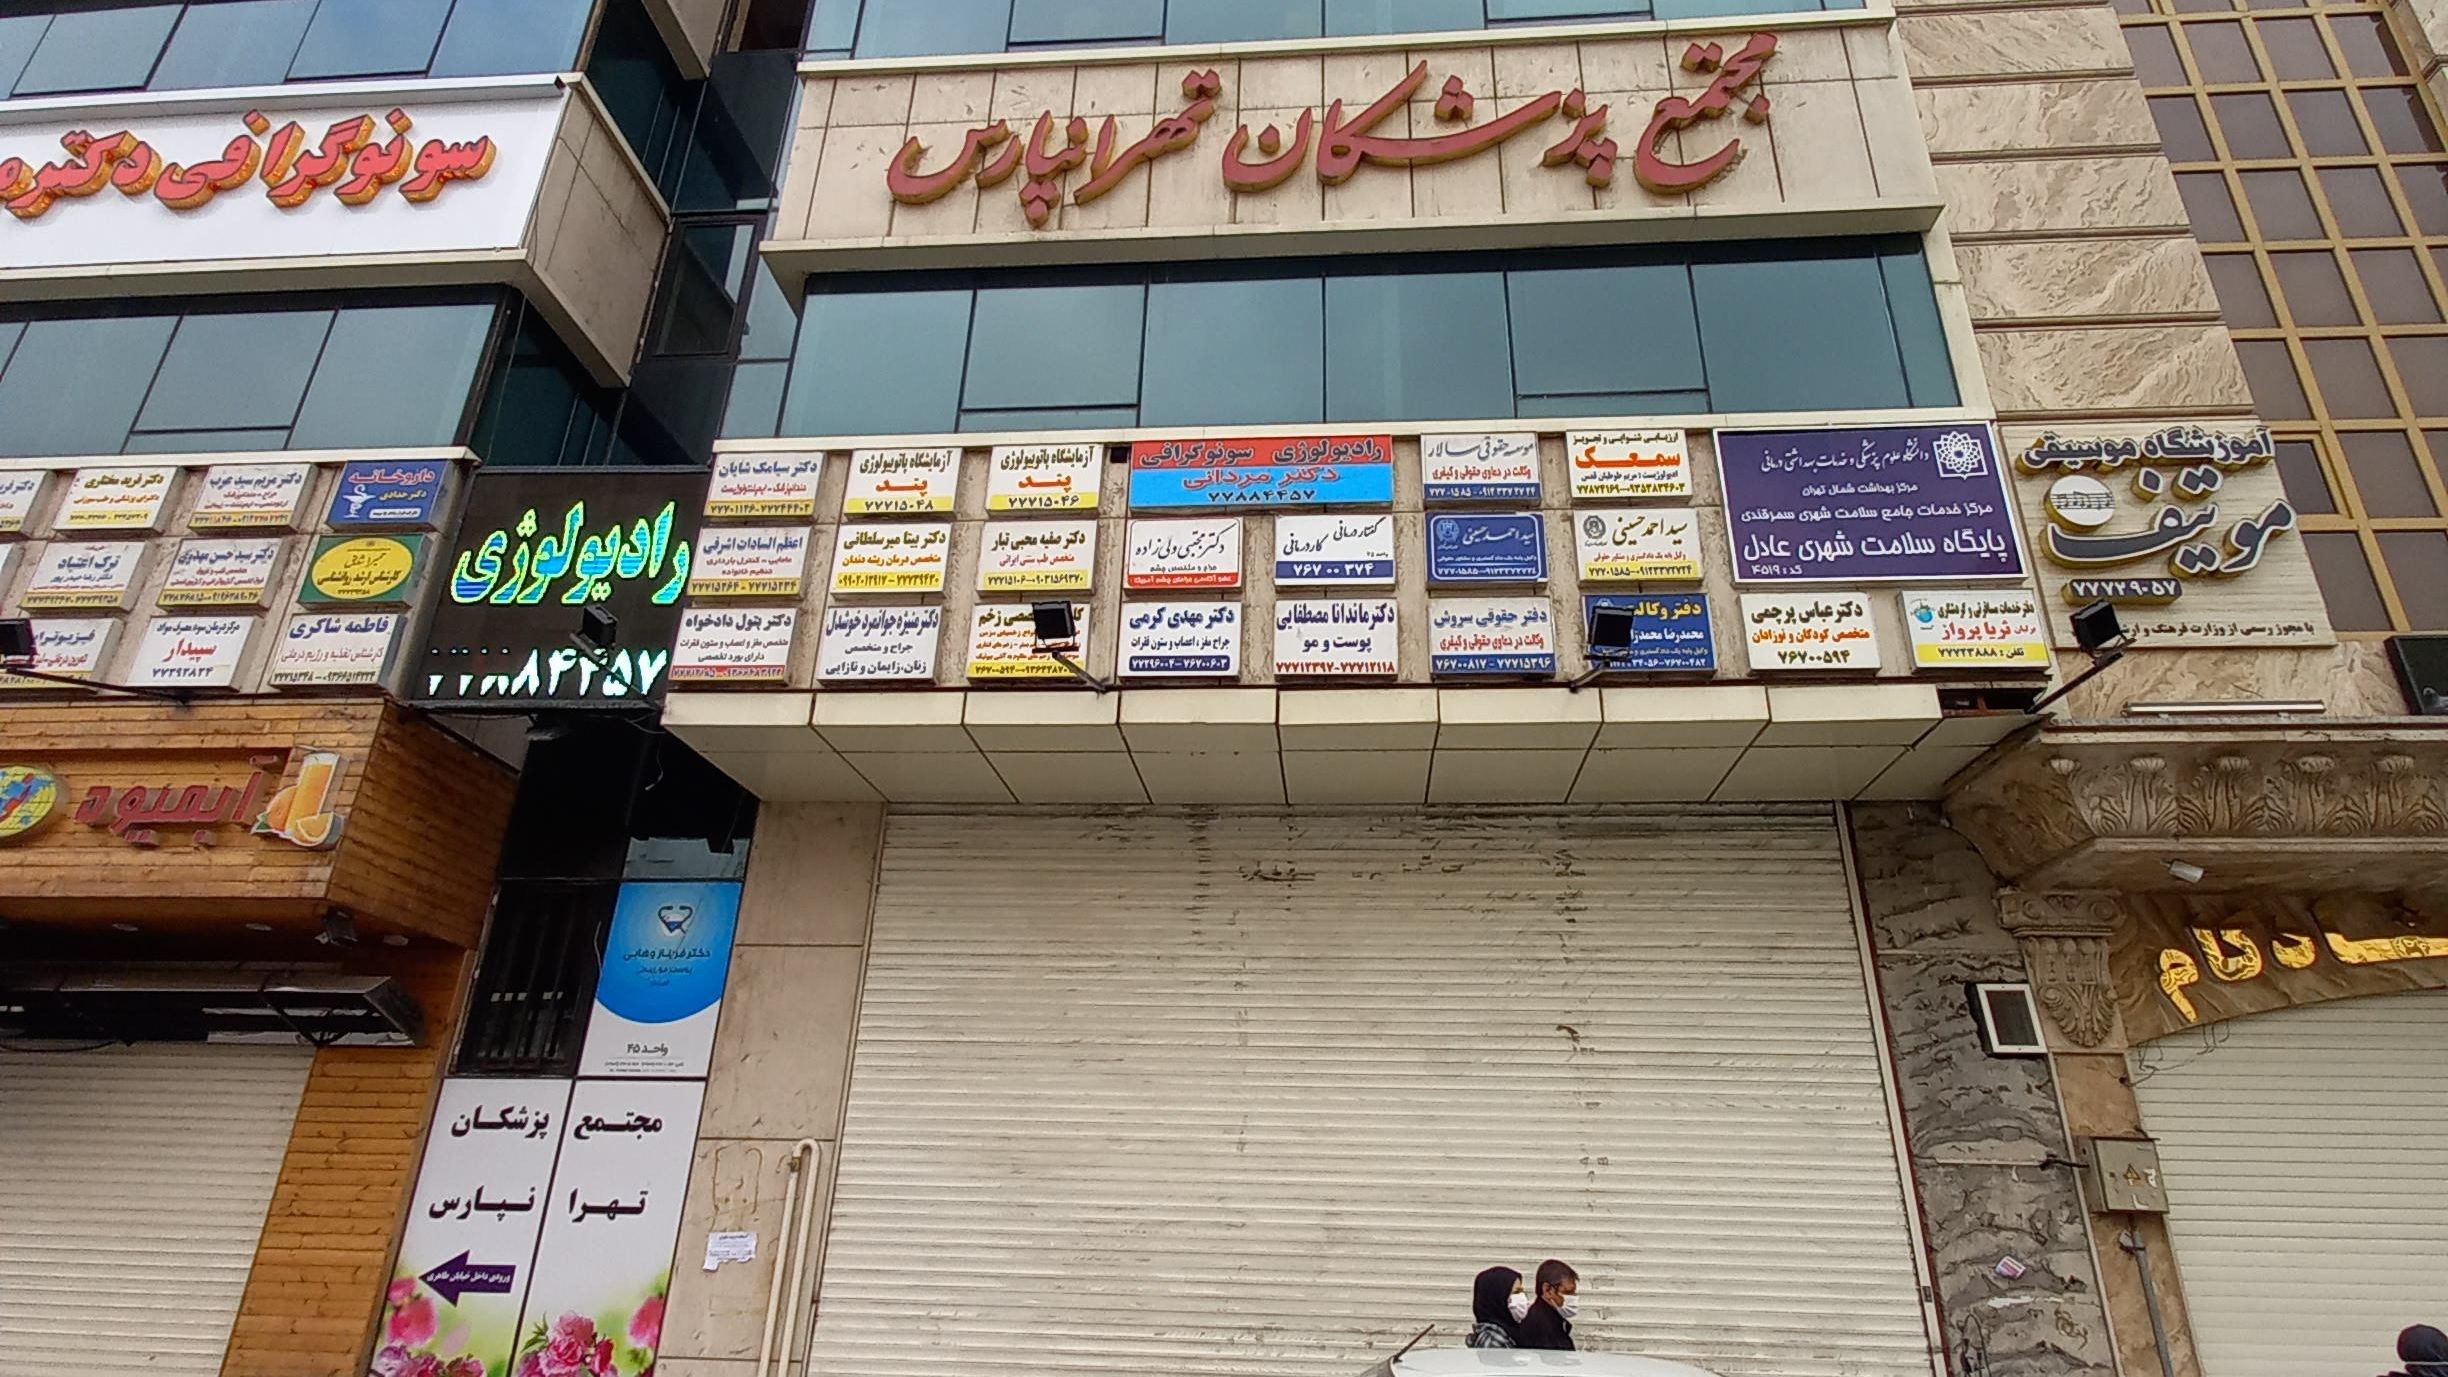 ساختمان پزشکان تهرانپارس